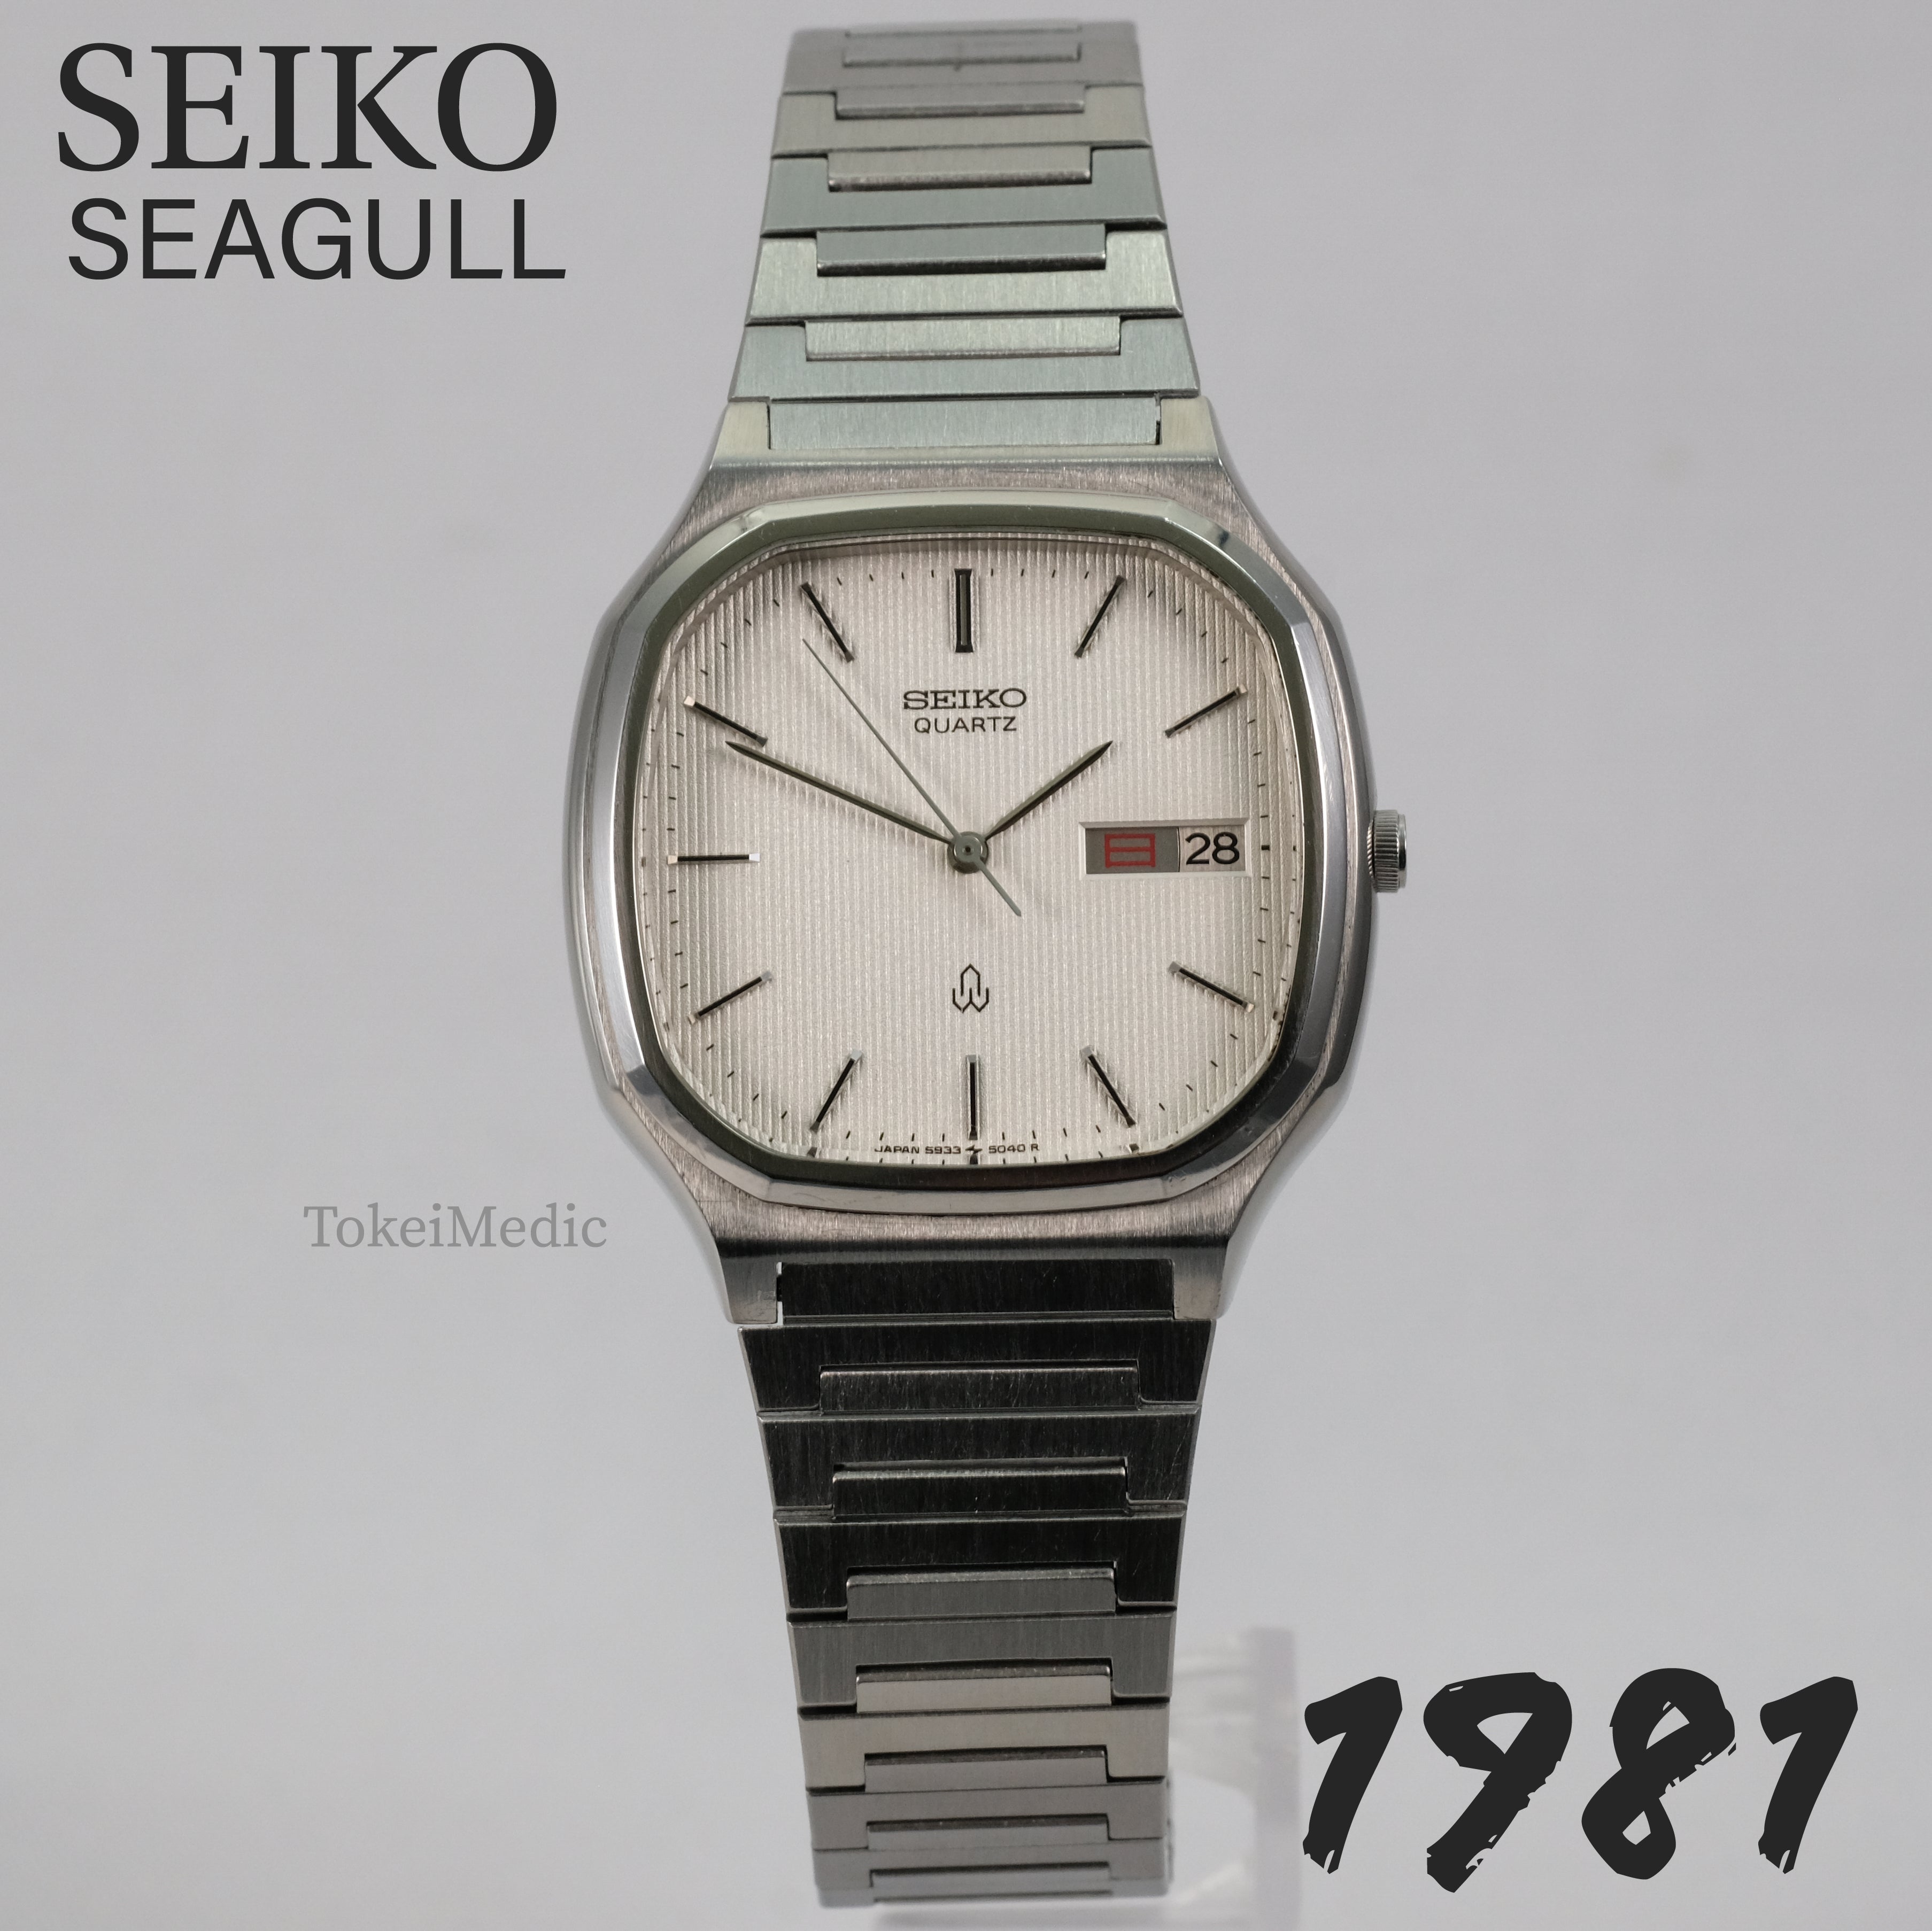 1981 Seiko Seagull 5933-5030